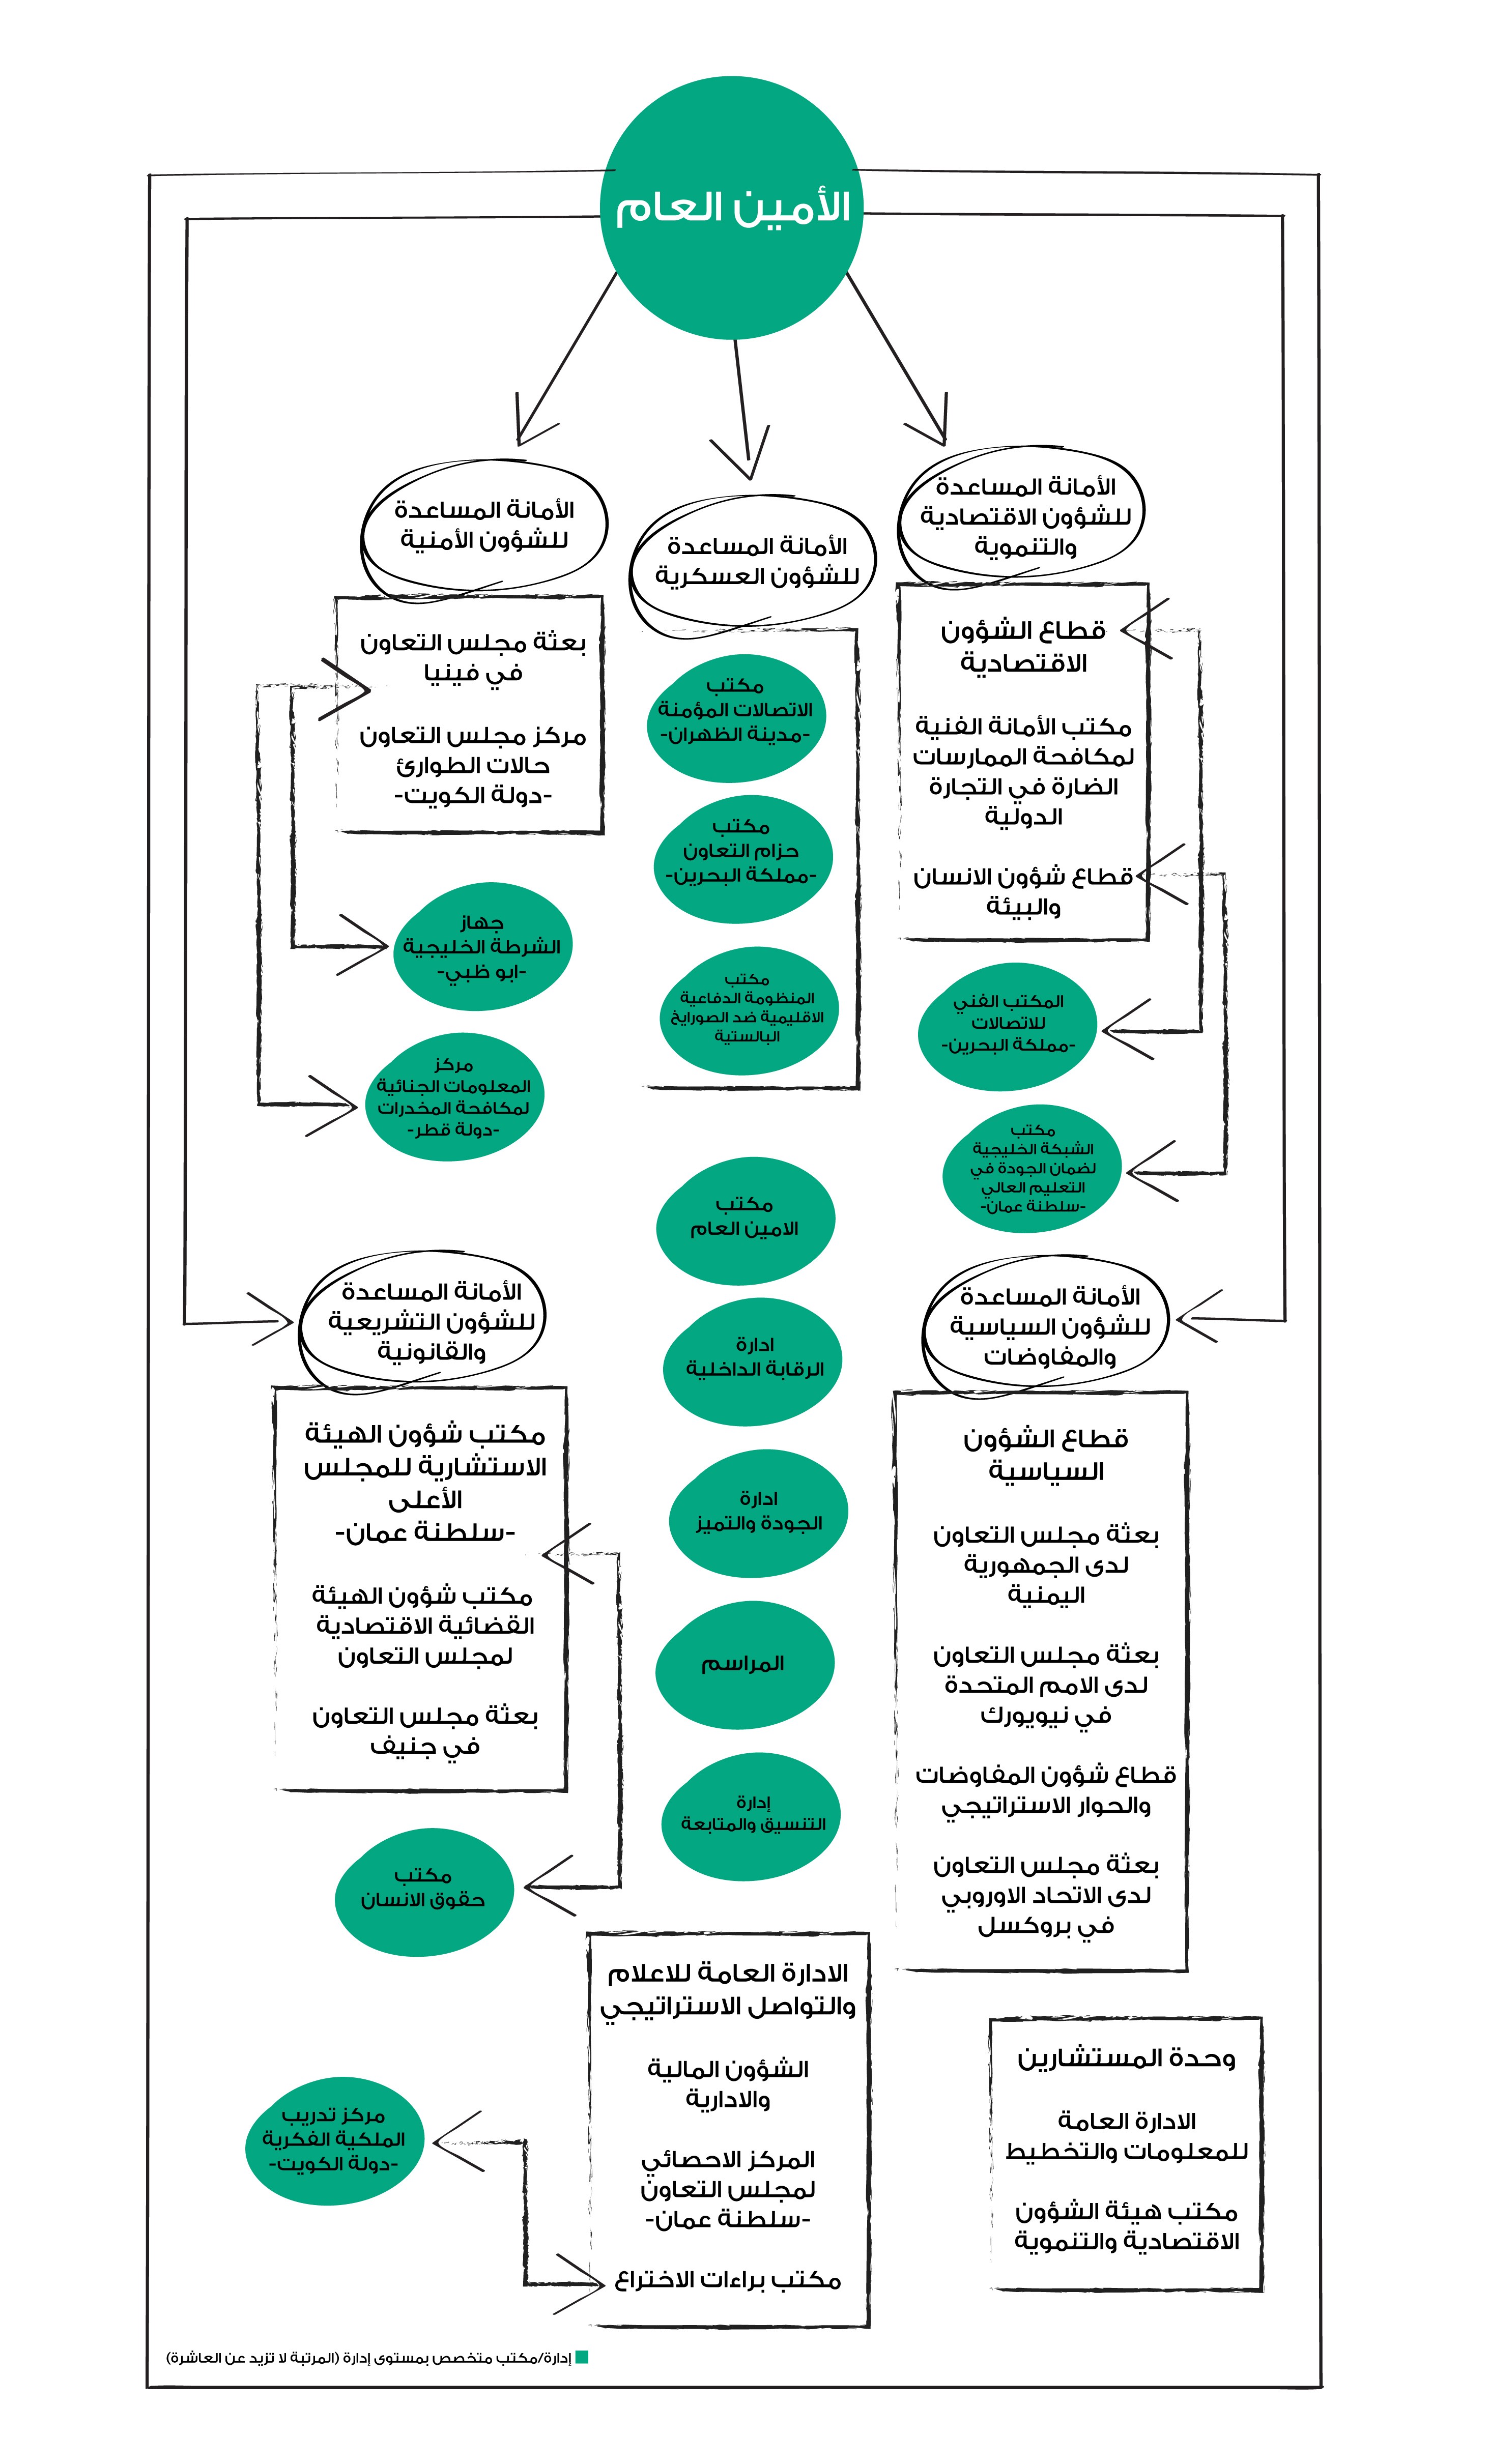 الهيكل التنظيمي للأمانة العامة لمجلس التعاون الخليجي